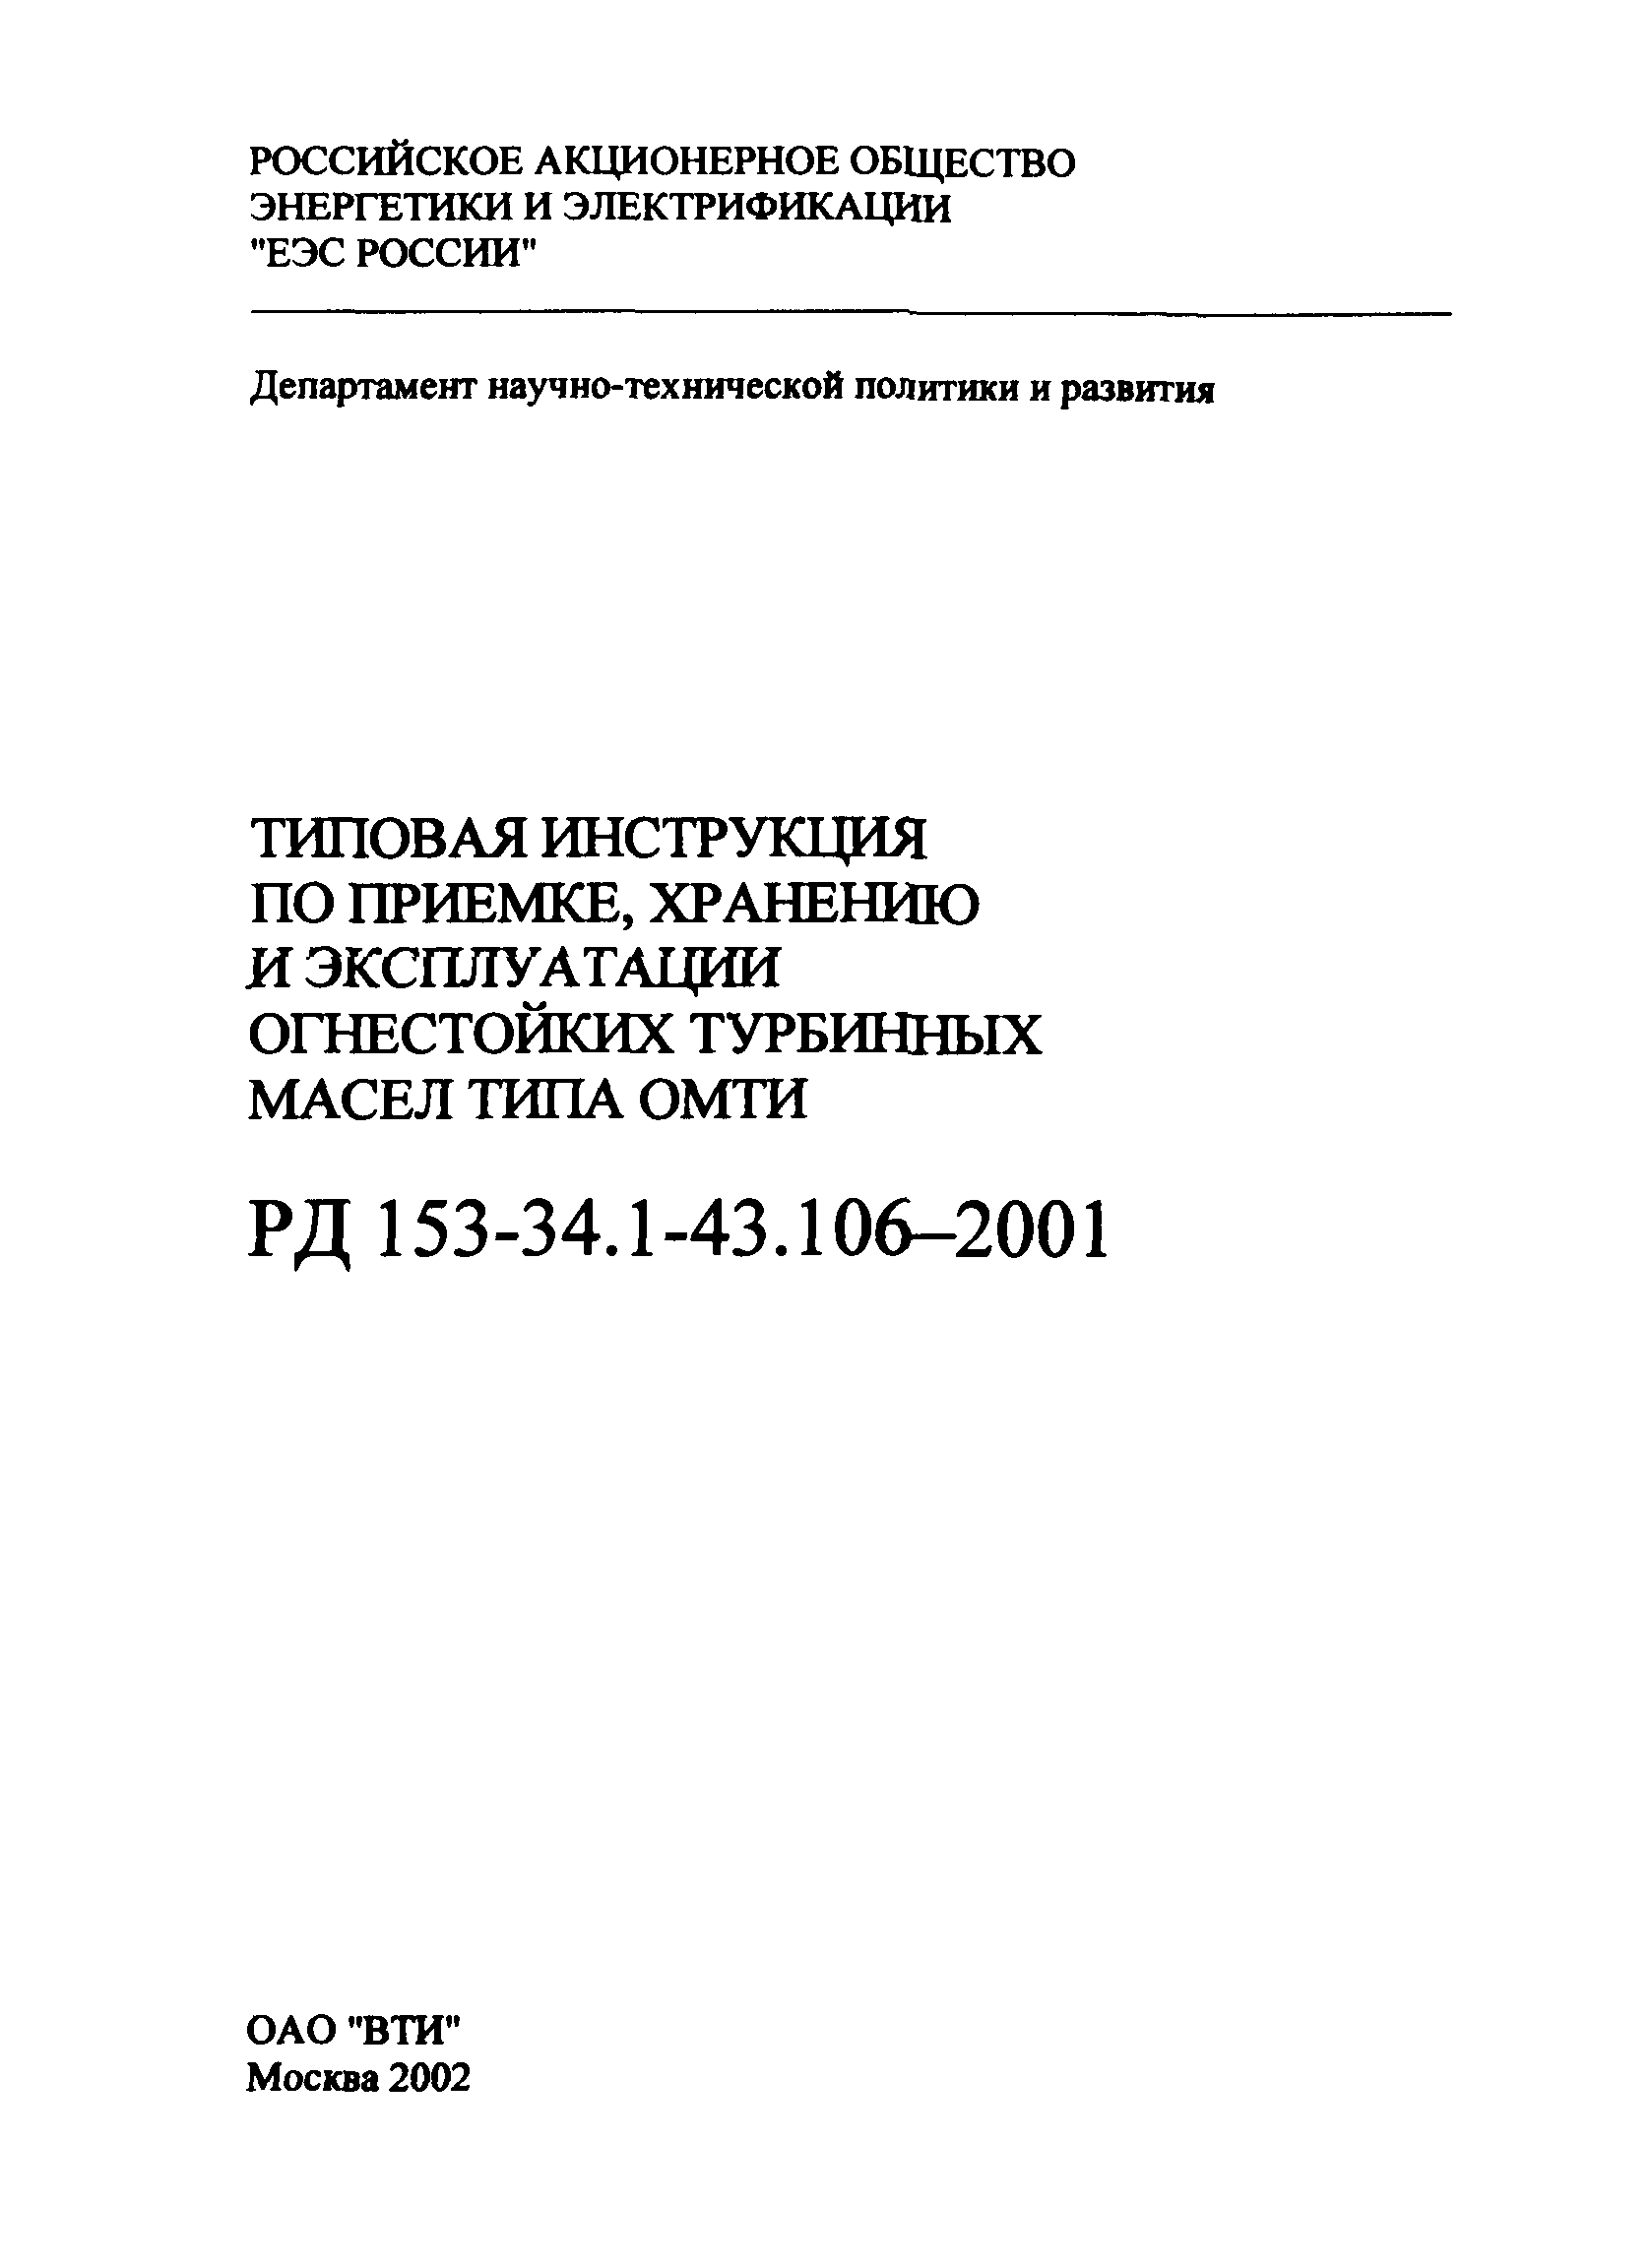 РД 153-34.1-43.106-2001